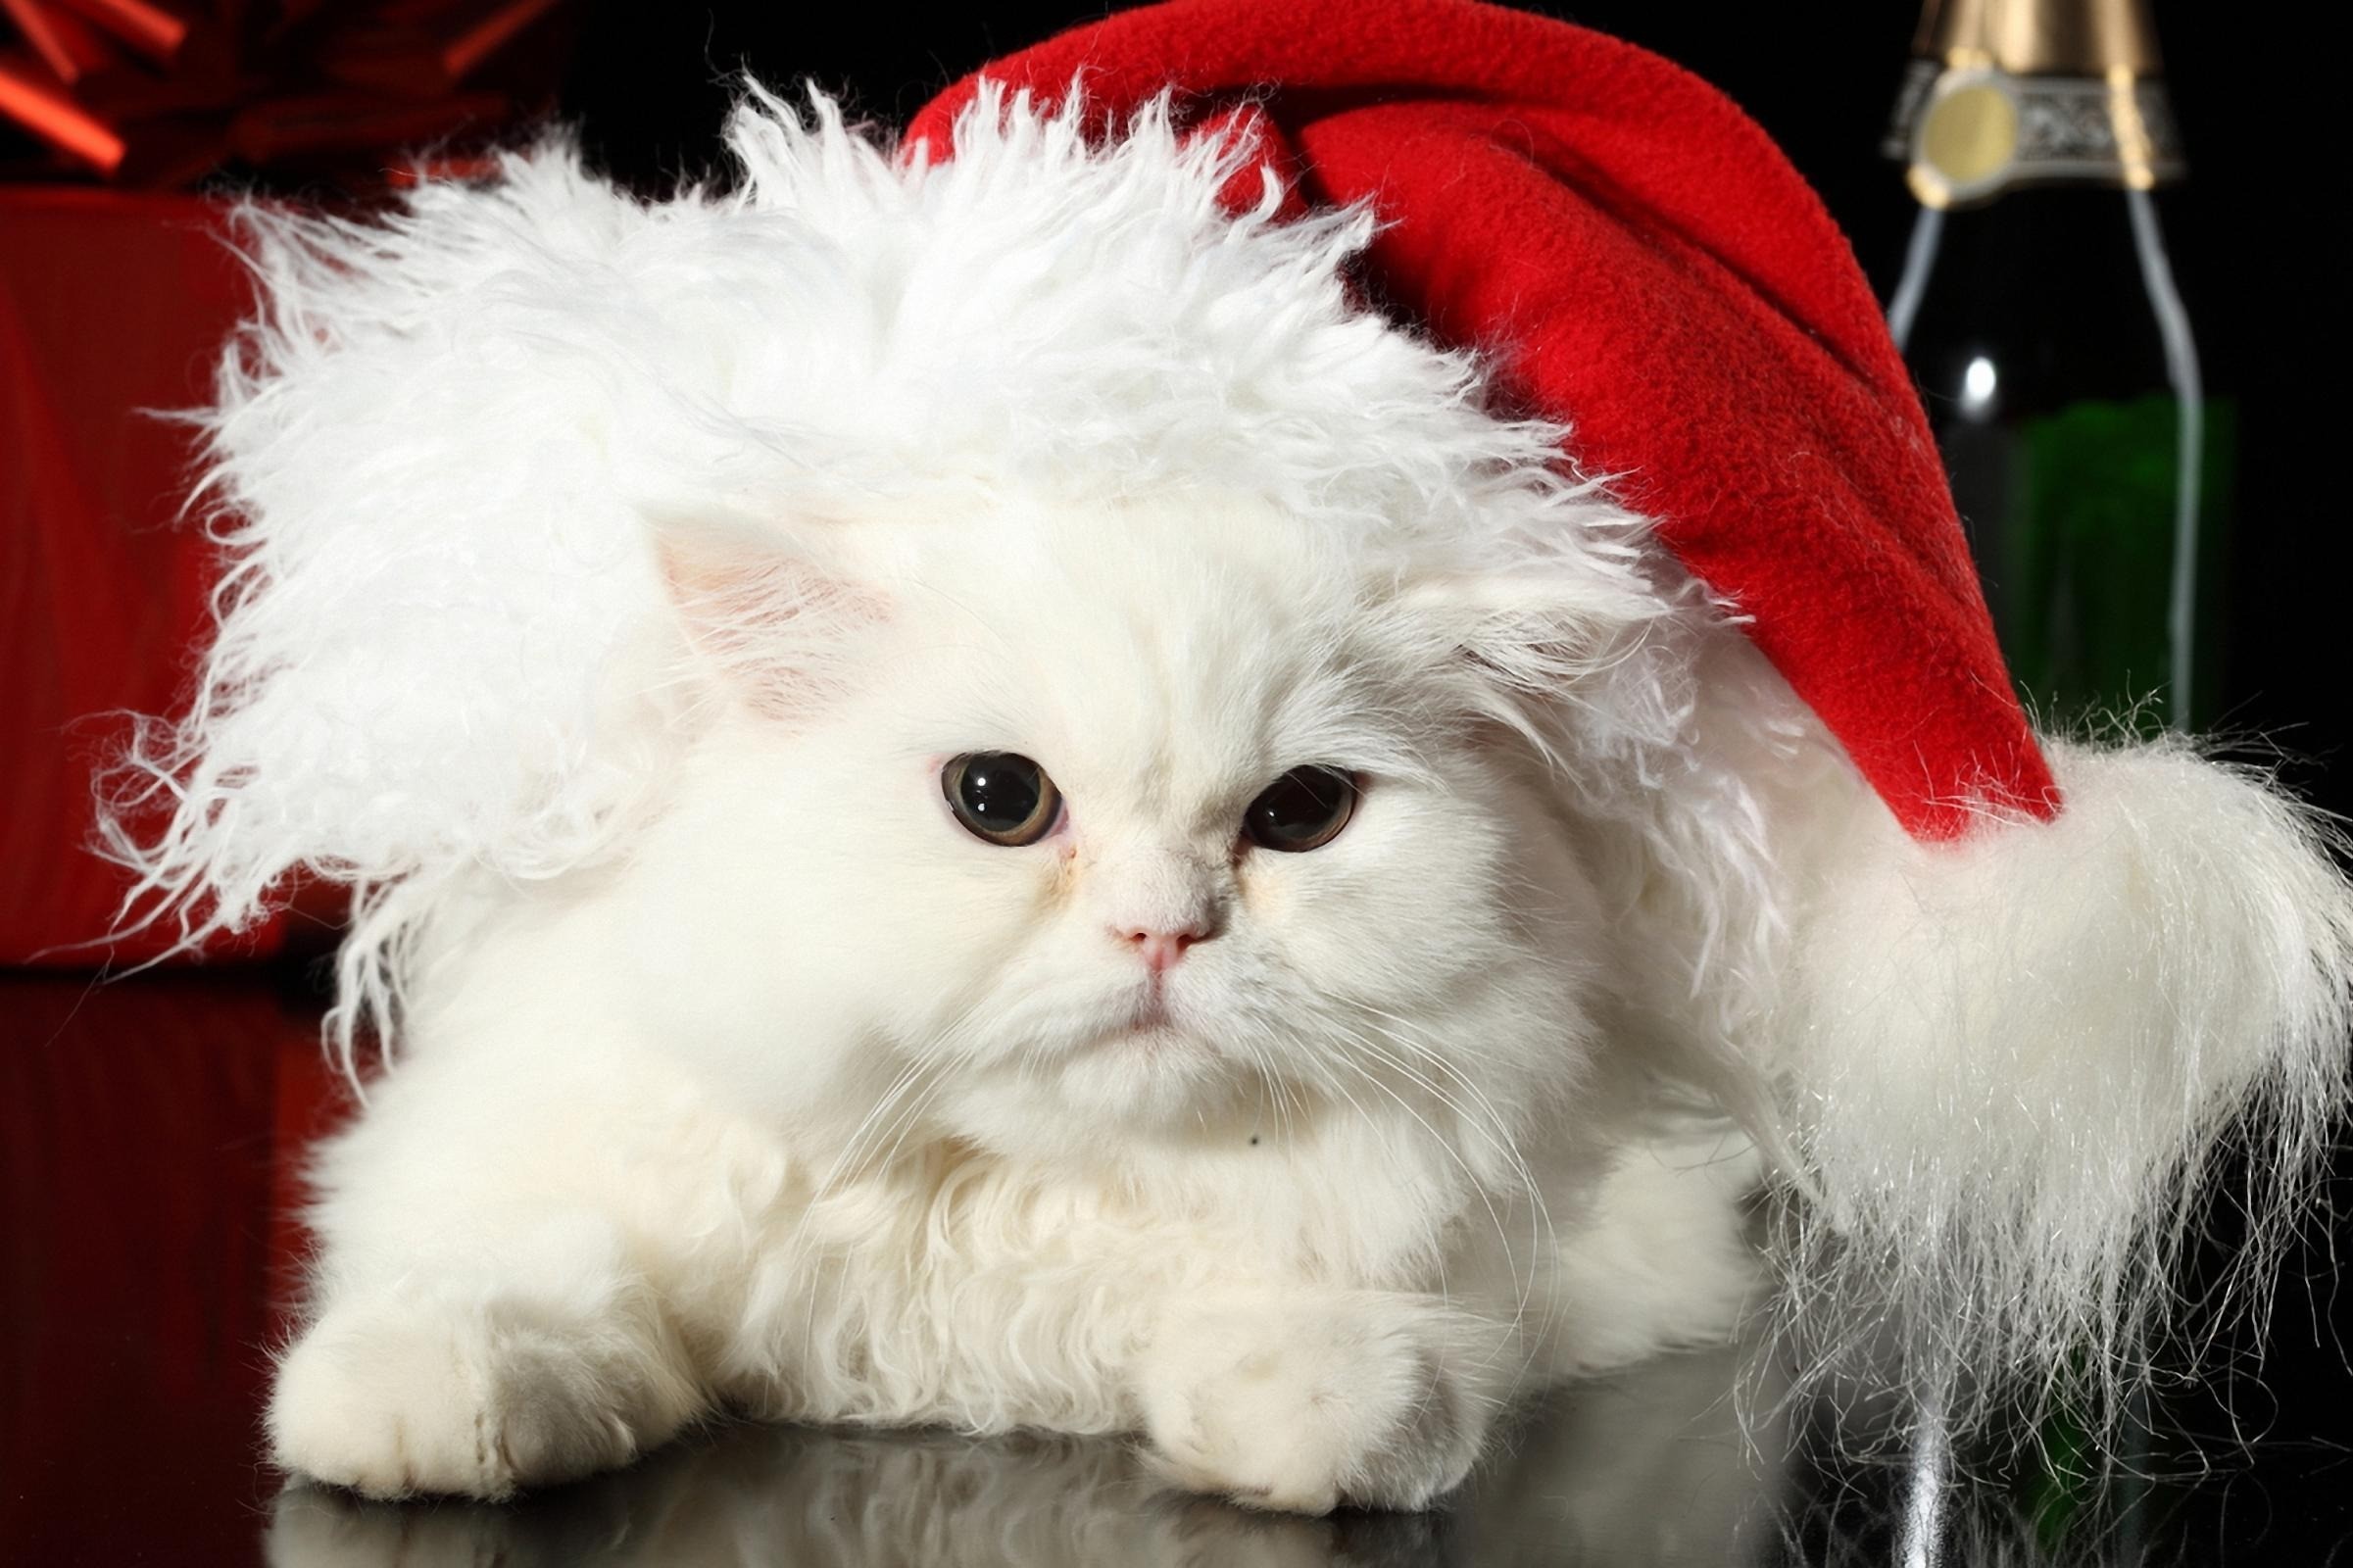 kittens, Christmas outfits - desktop wallpaper